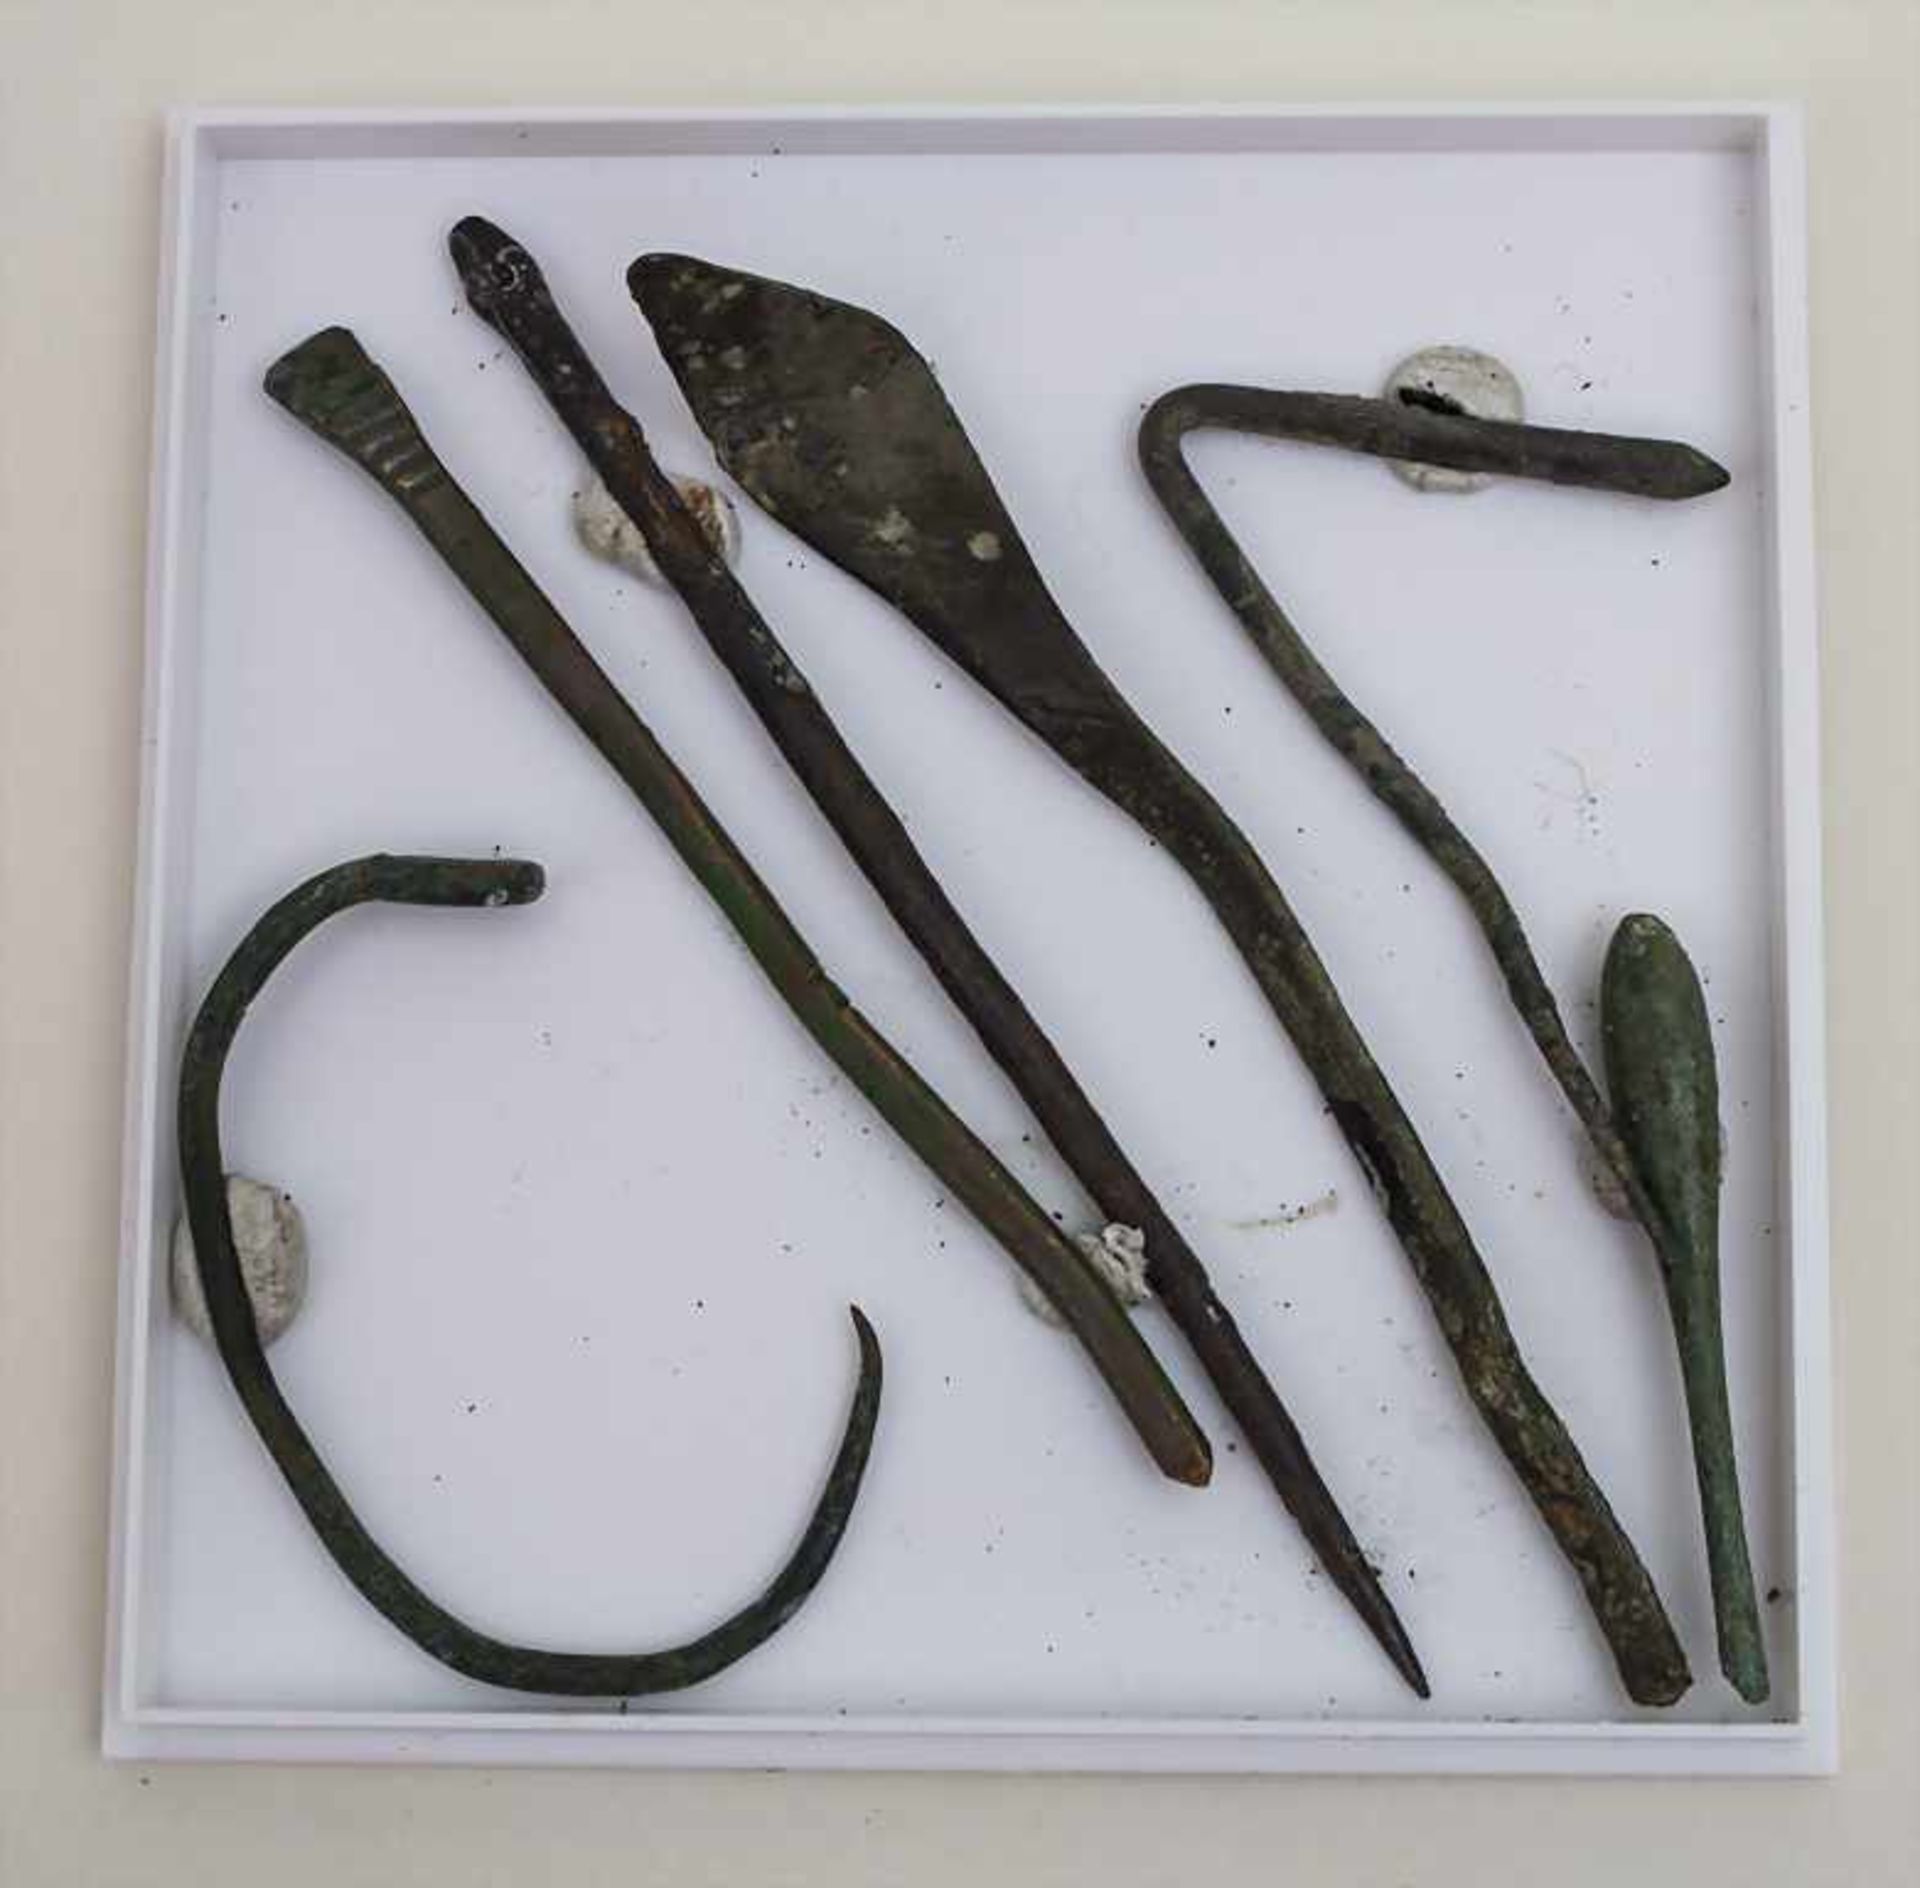 6 römische medizinische Instrumente / 6 Roman medical instruments Länge: 8,4 - 3,7 cm,Herkunft: